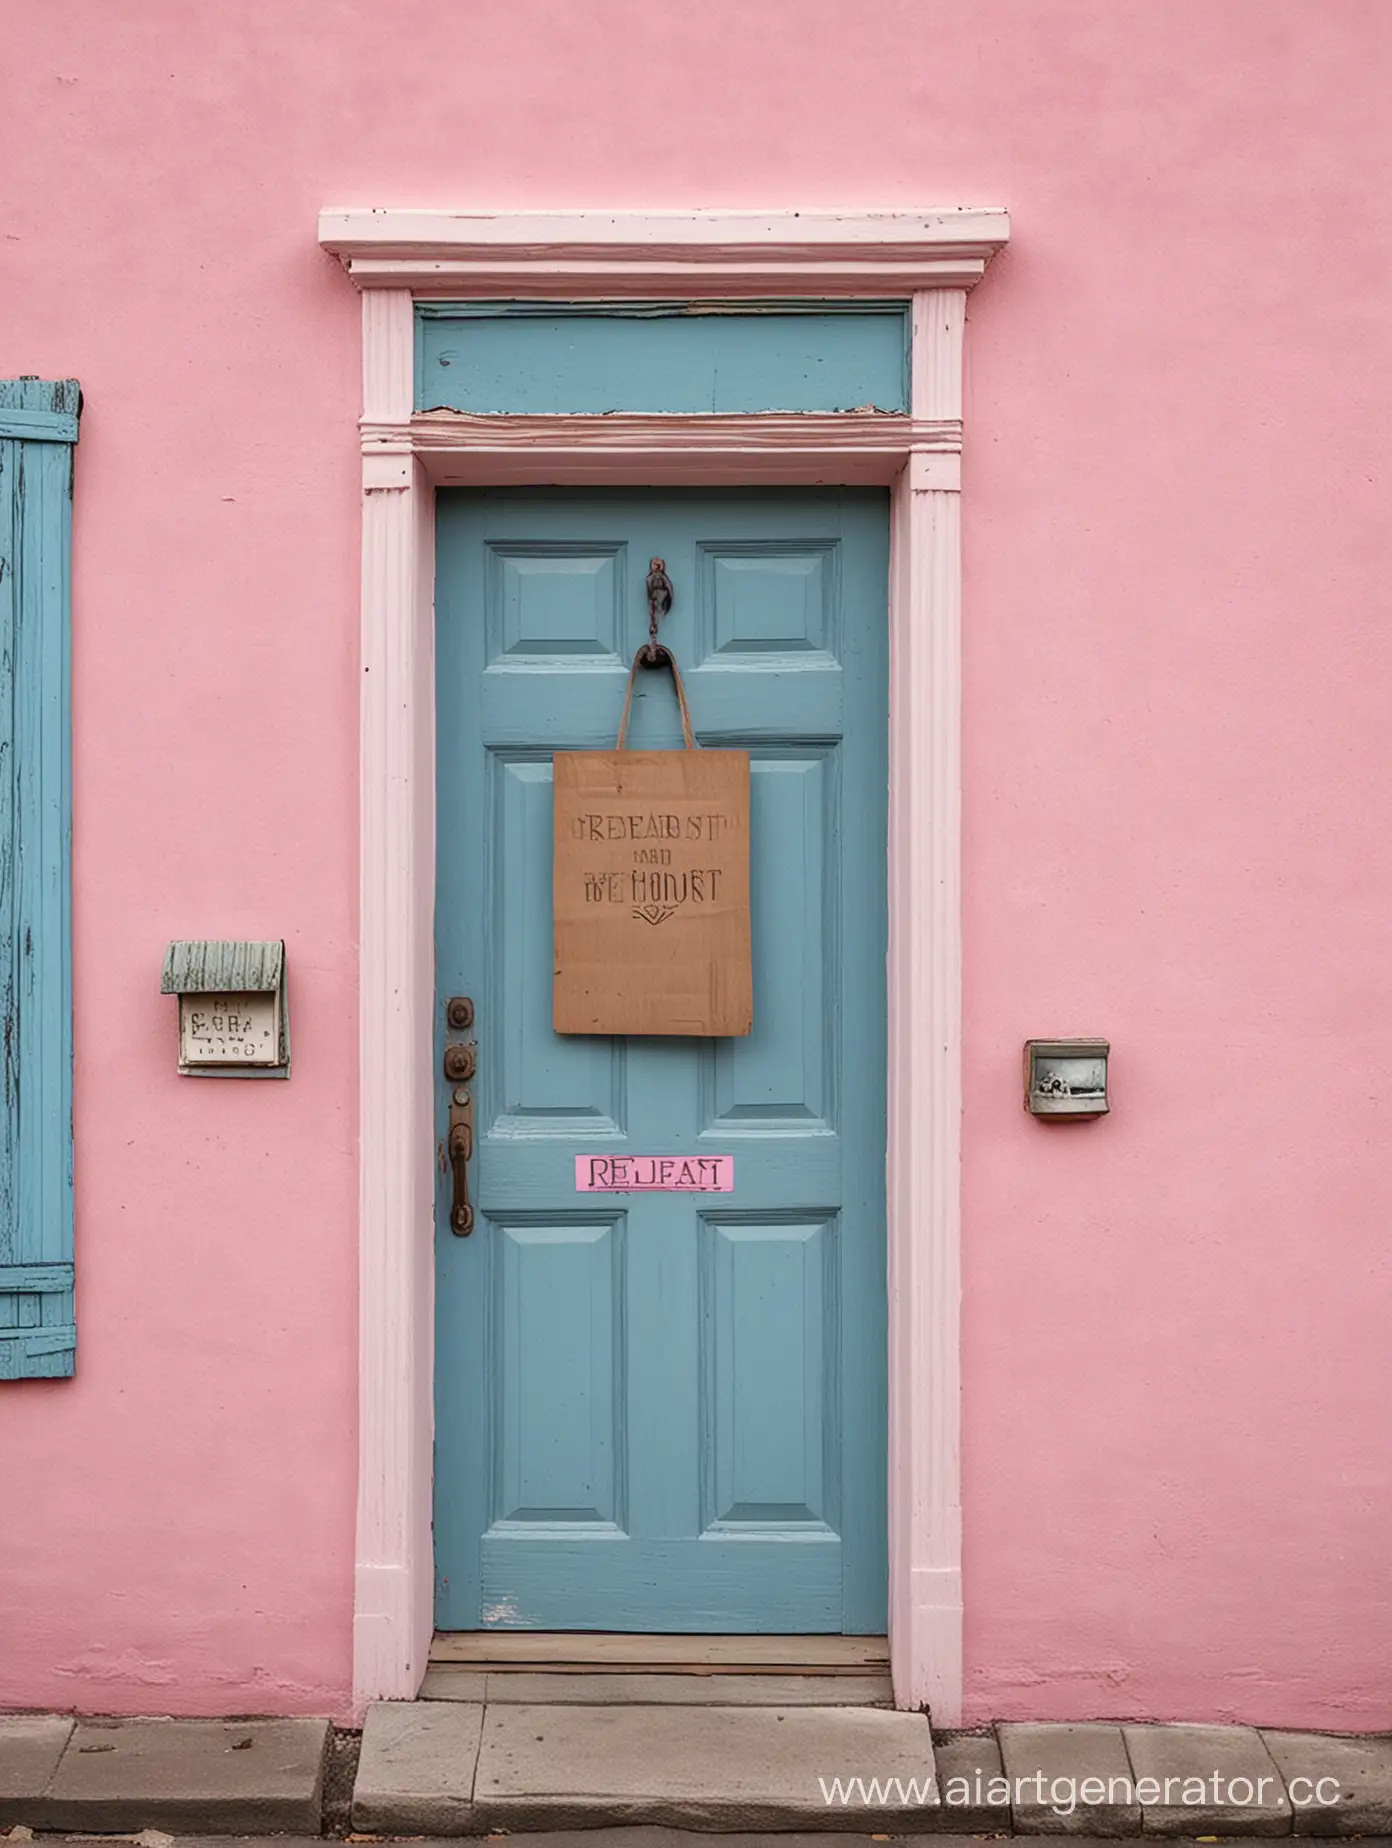 Reboot-Sign-on-Blue-Door-of-Pink-House